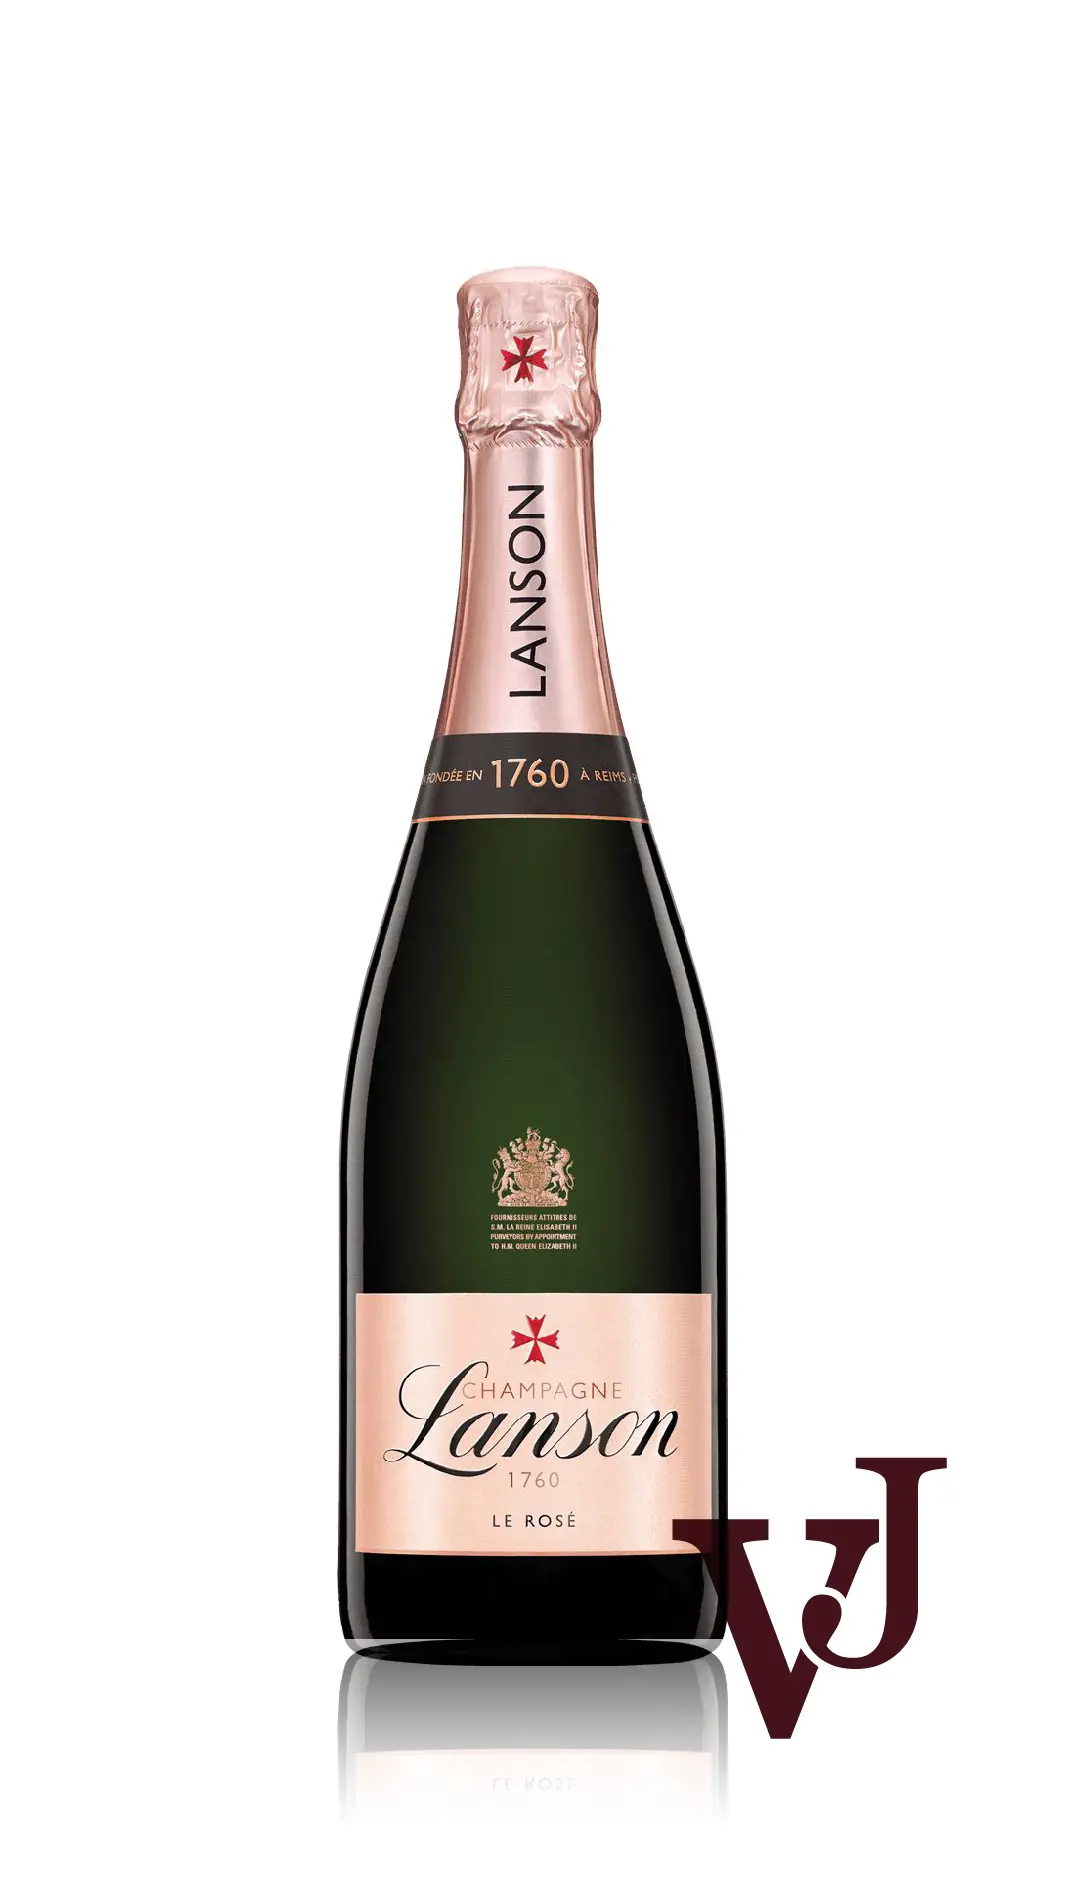 Mousserande Vin - Lanson Rose Label artikel nummer 749501 från producenten Lanson från området Frankrike - Vinjournalen.se